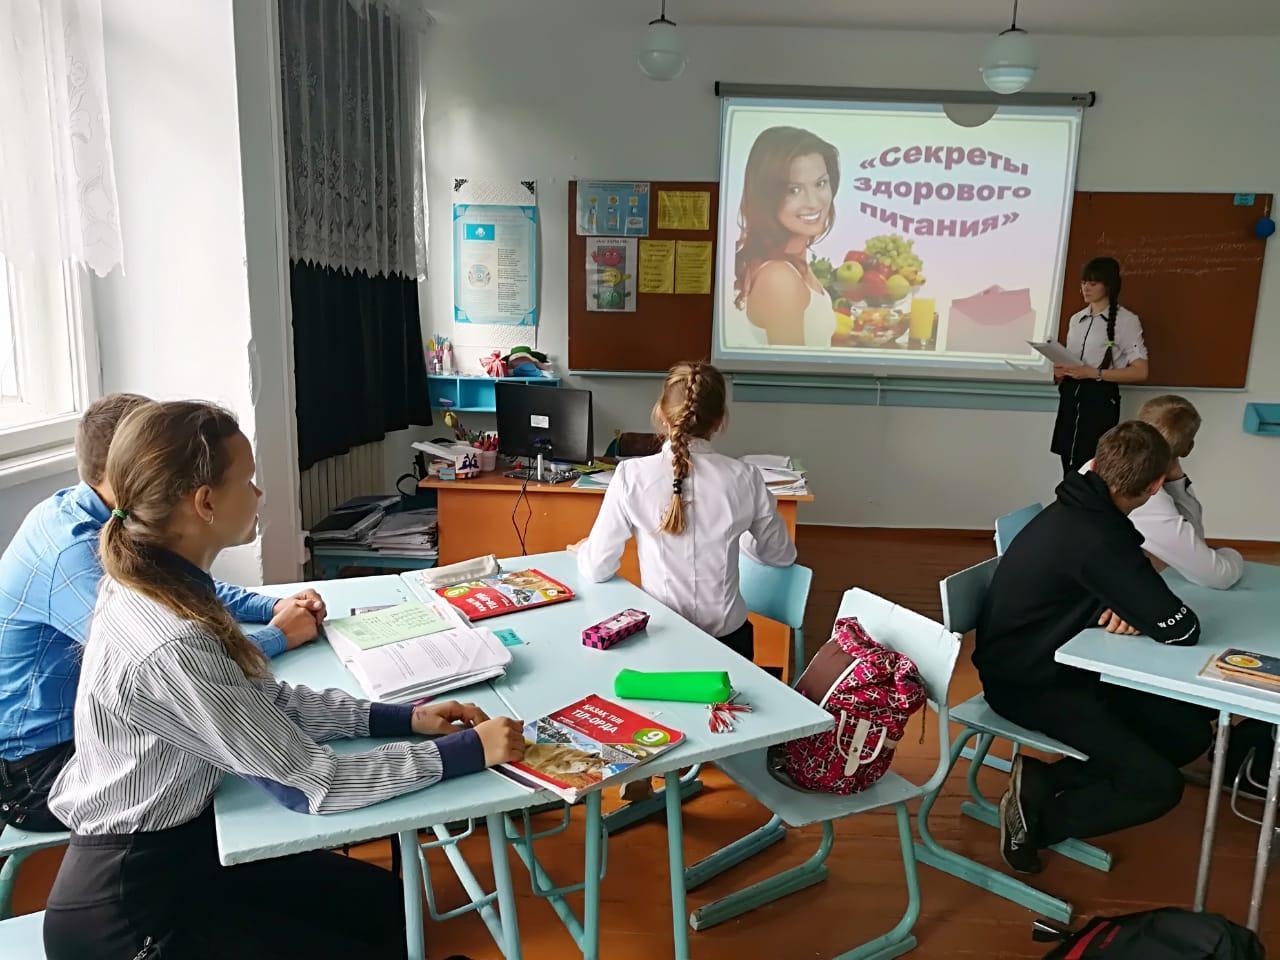 В рамках реализации партийного проекта "Школьные столовые" 15.05.2019, в 9 классе был проведен классный час на тему: "Секреты здорового питания"